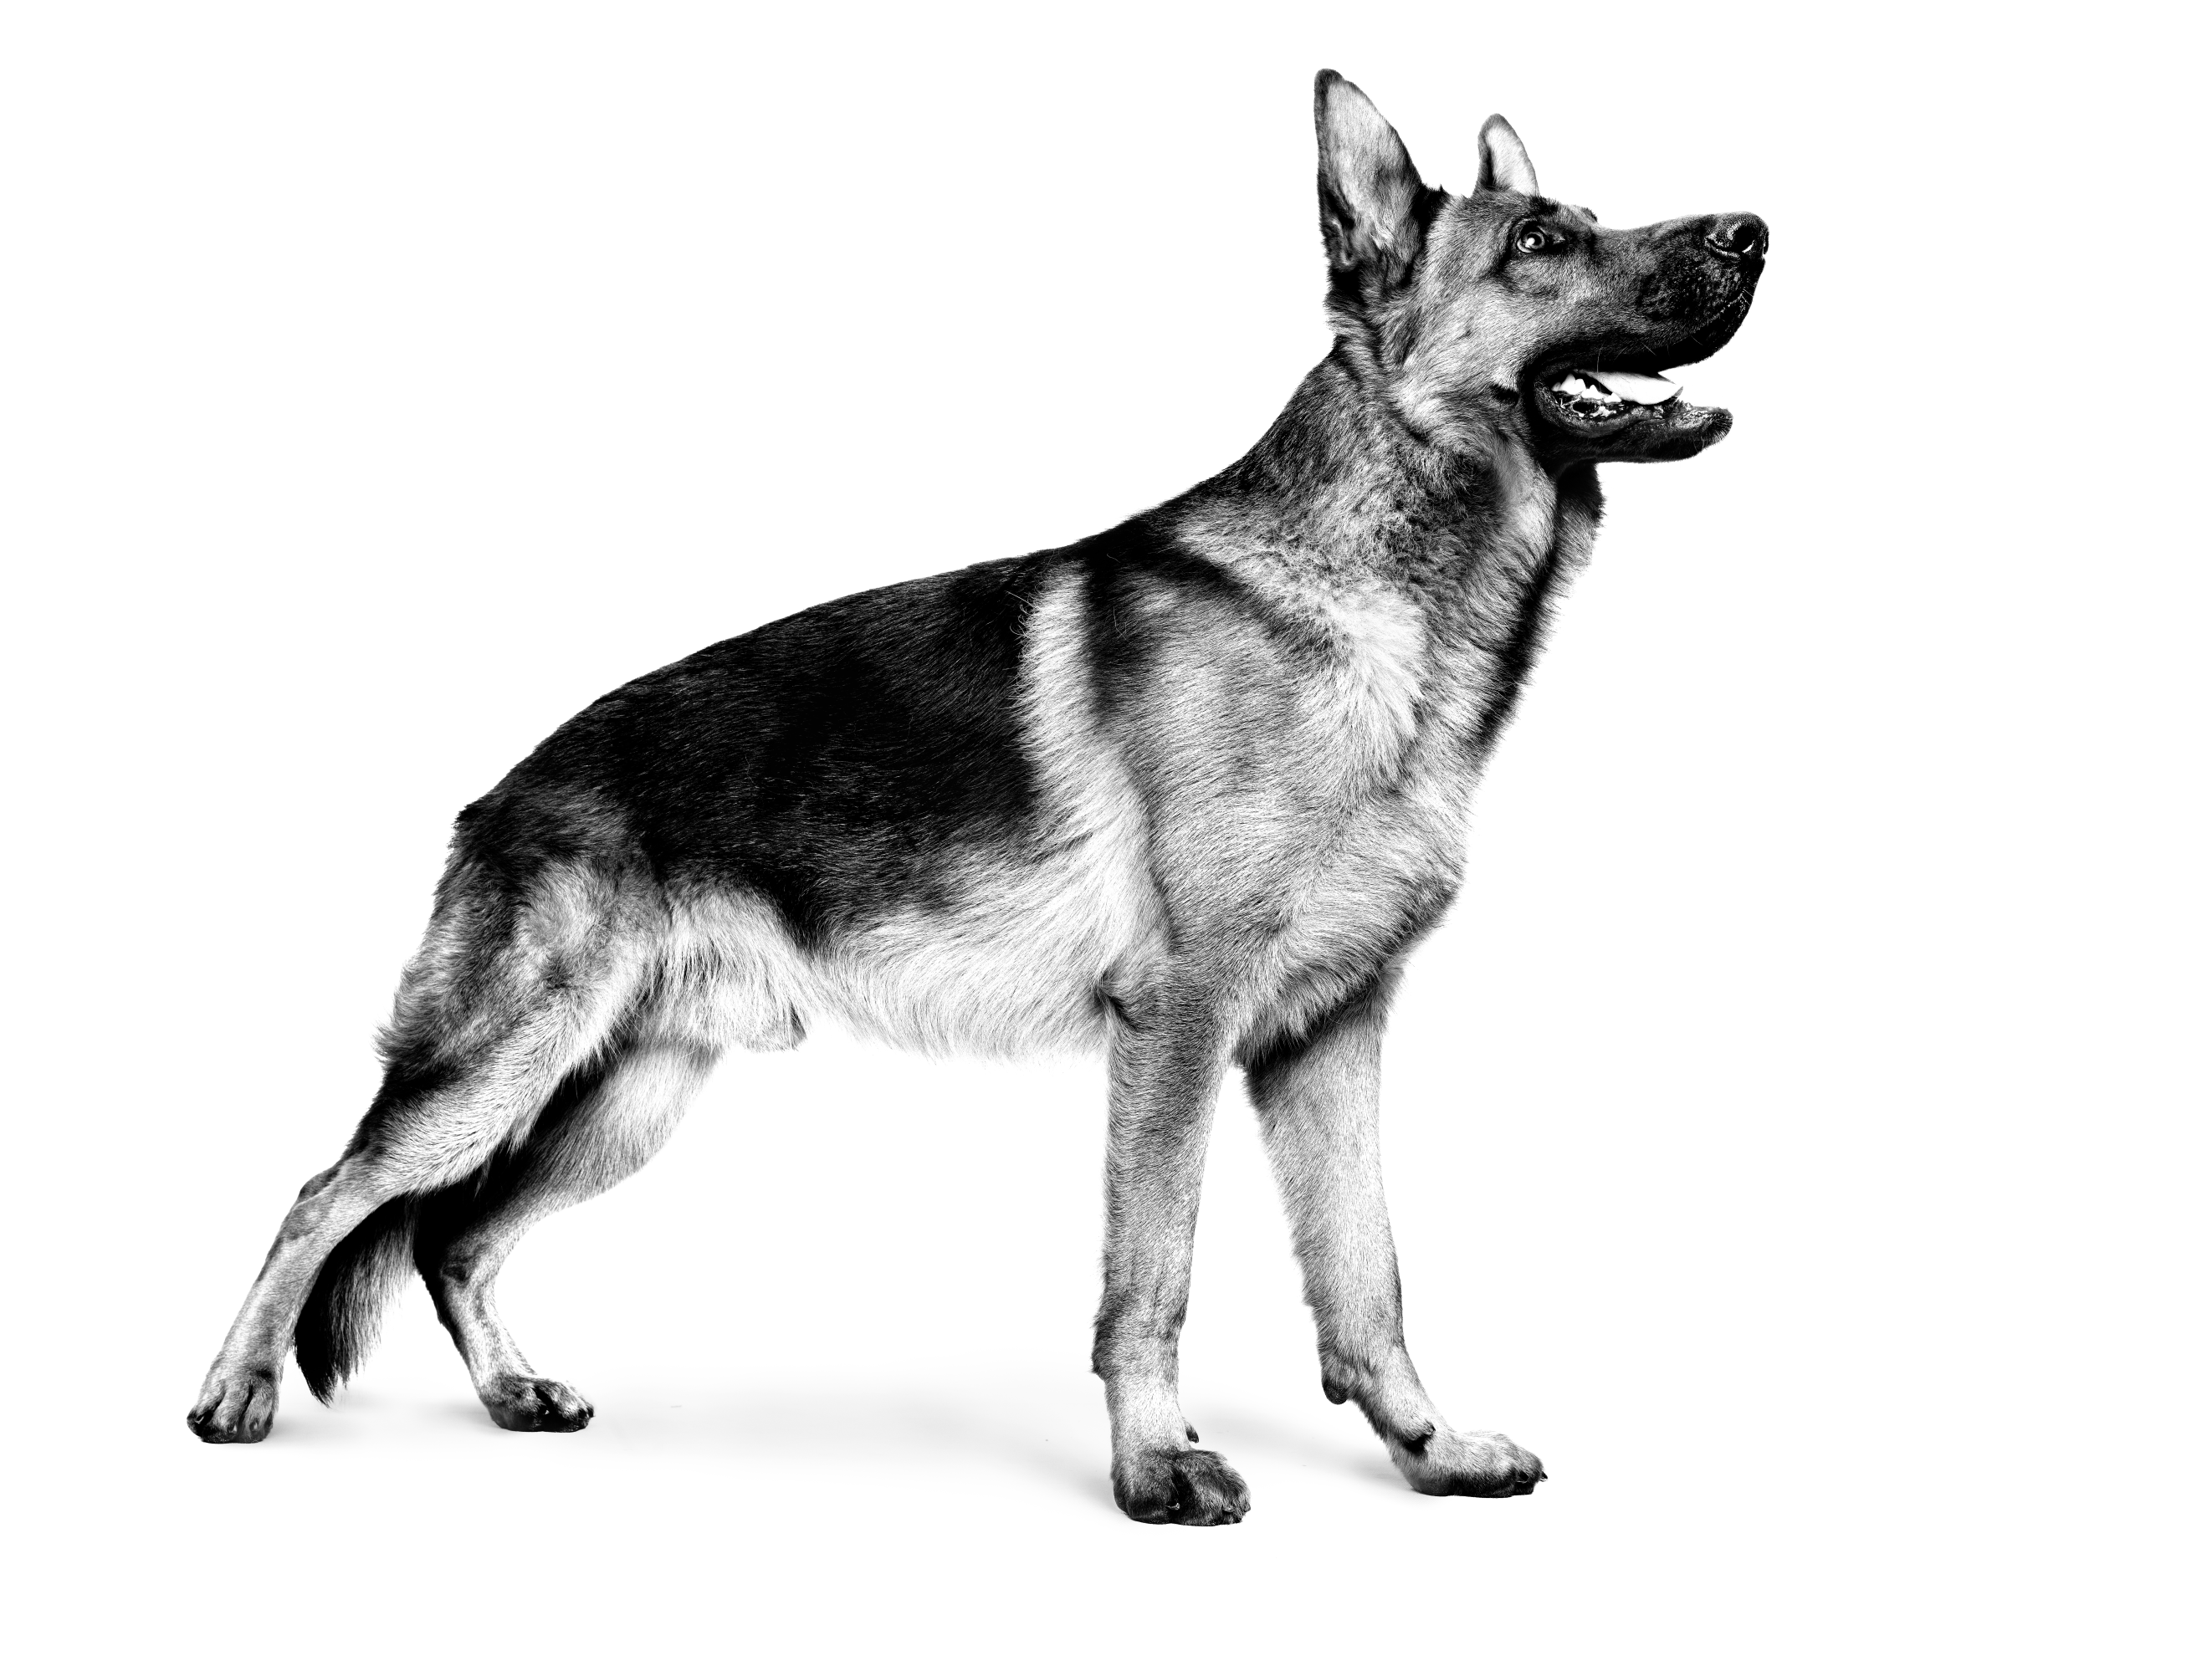 German Shepherd dog standing up